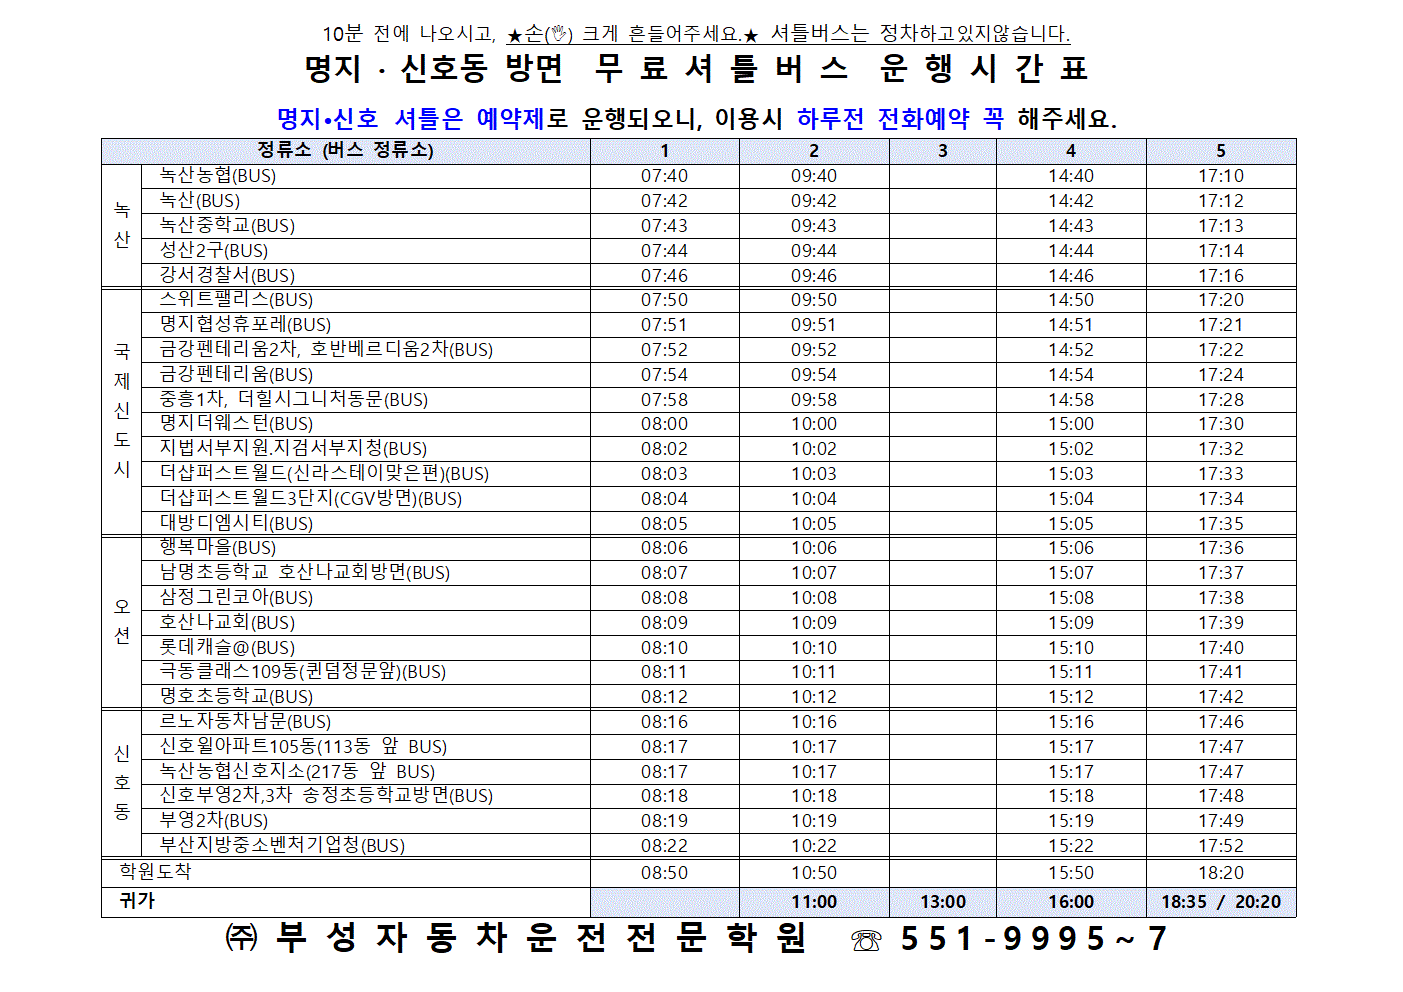 명지 운행시간표 23년도 최신001.gif